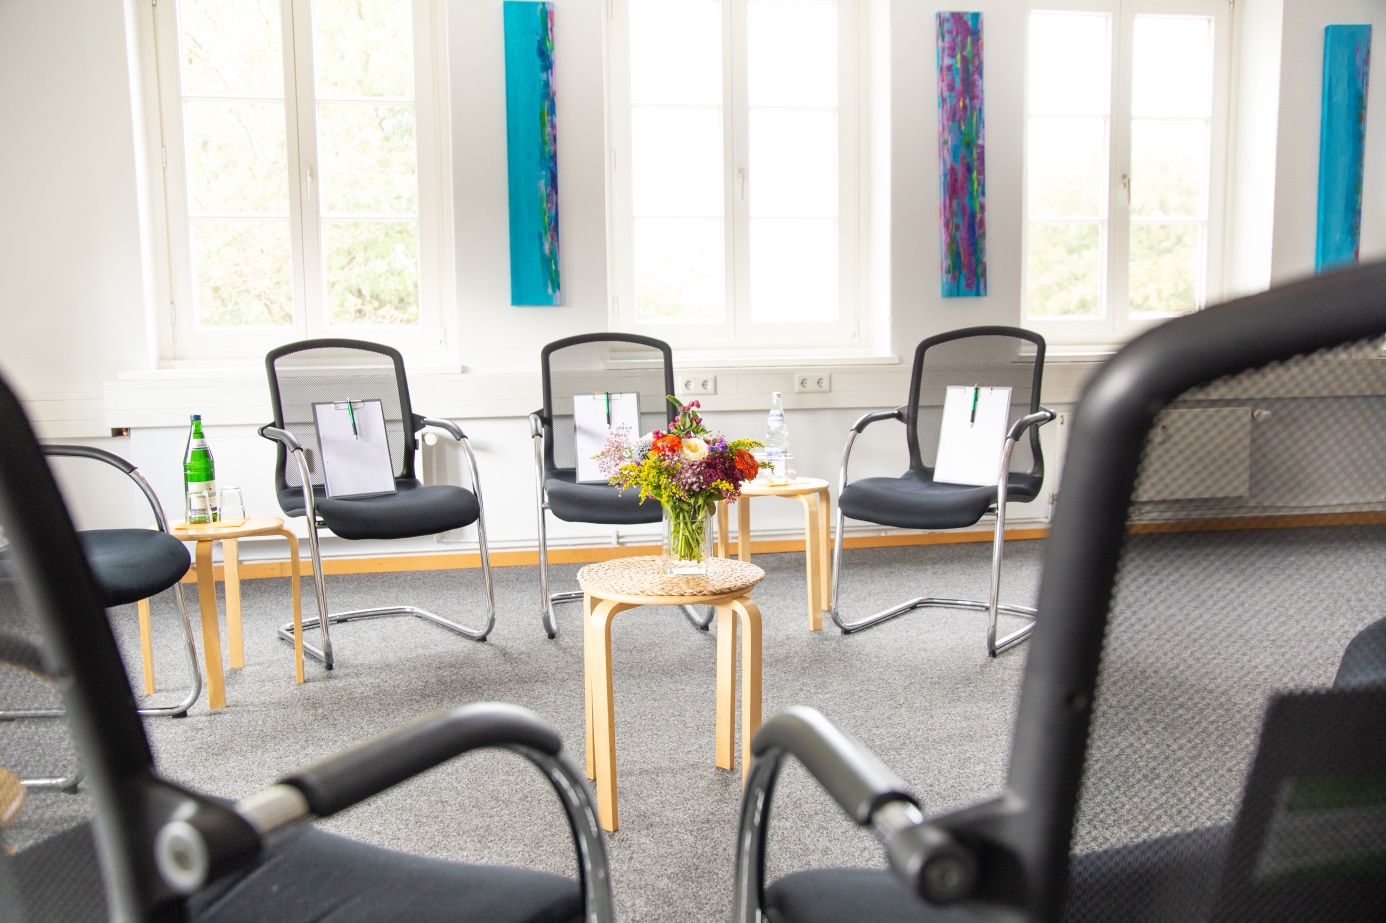 Foto: Seminarraum mit Stühlen